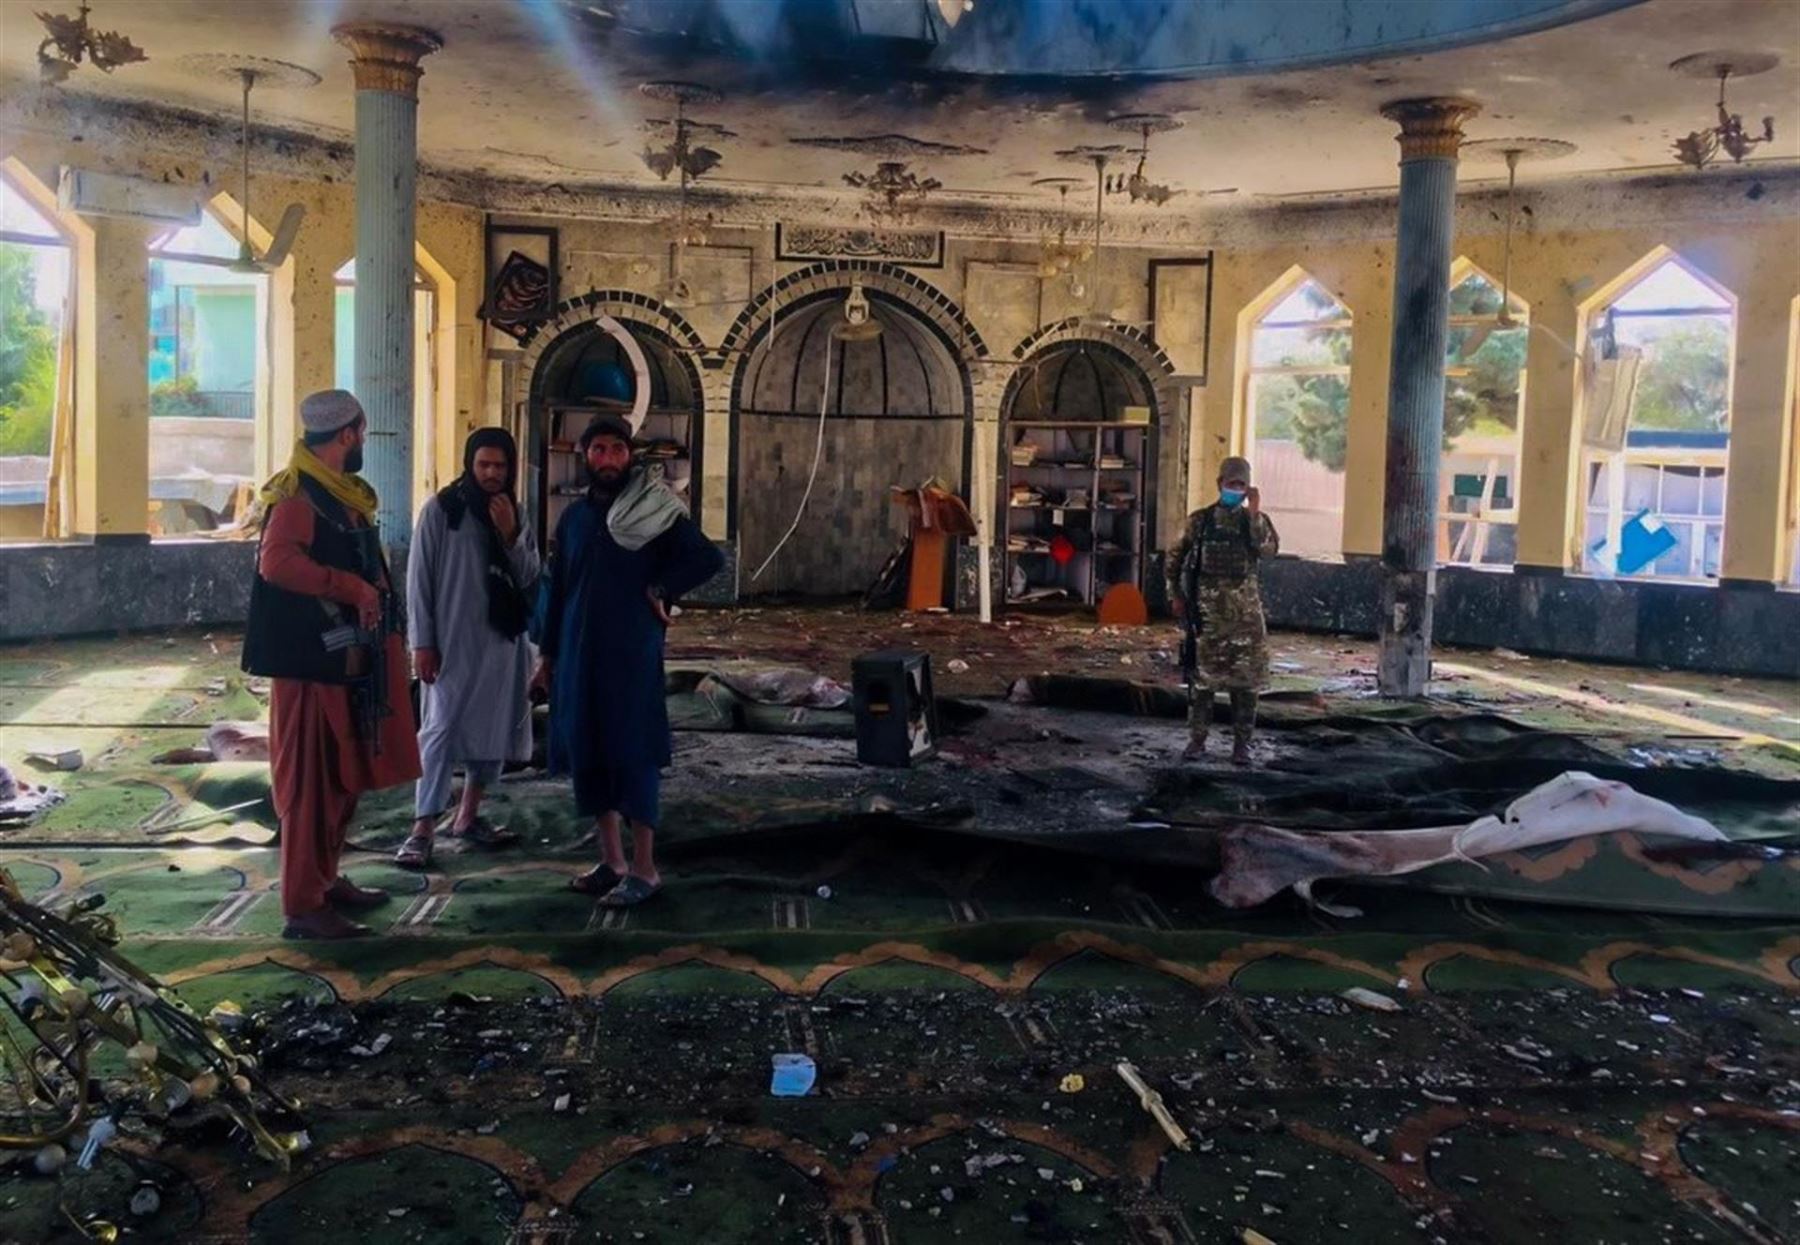 32 muertos y 50 heridos en atentado en una mezquita afgana.